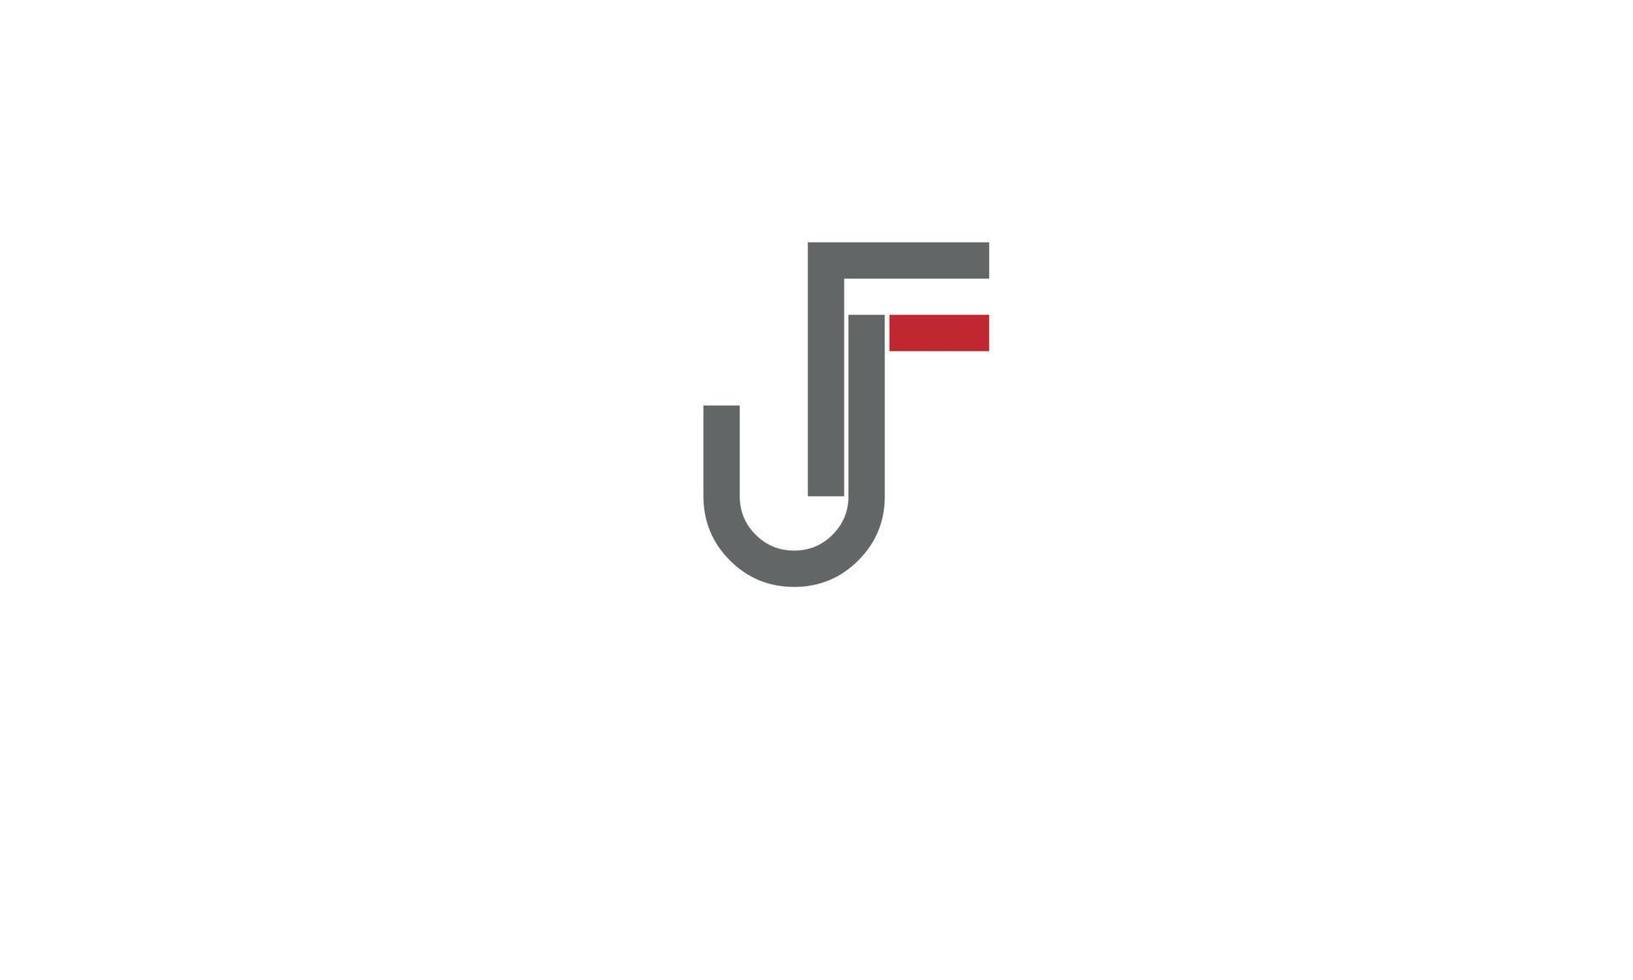 alfabeto lettere iniziali monogramma logo jf, fj, j e f vettore